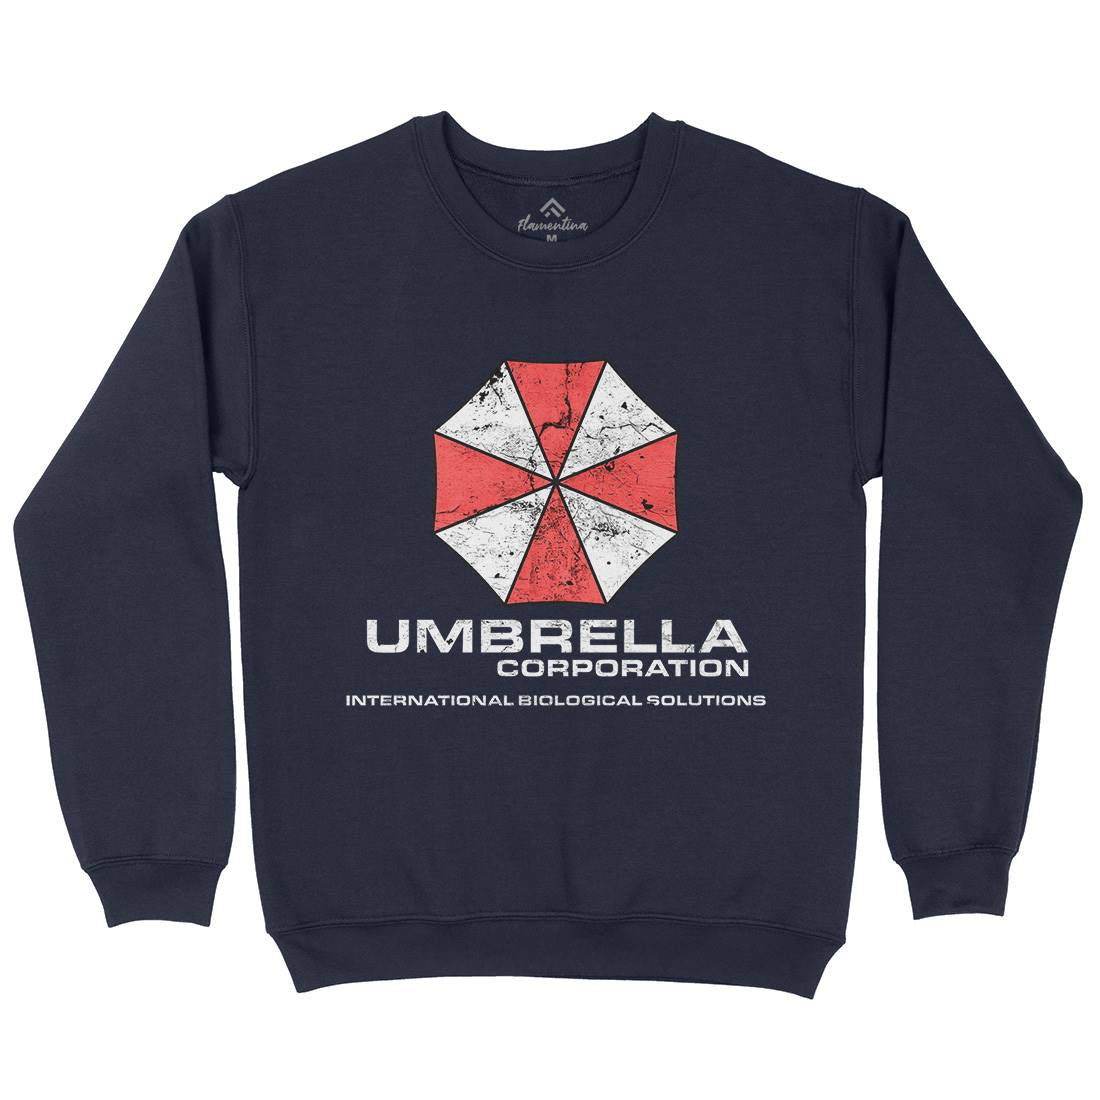 Umbrella Corp Kids Crew Neck Sweatshirt Horror D439